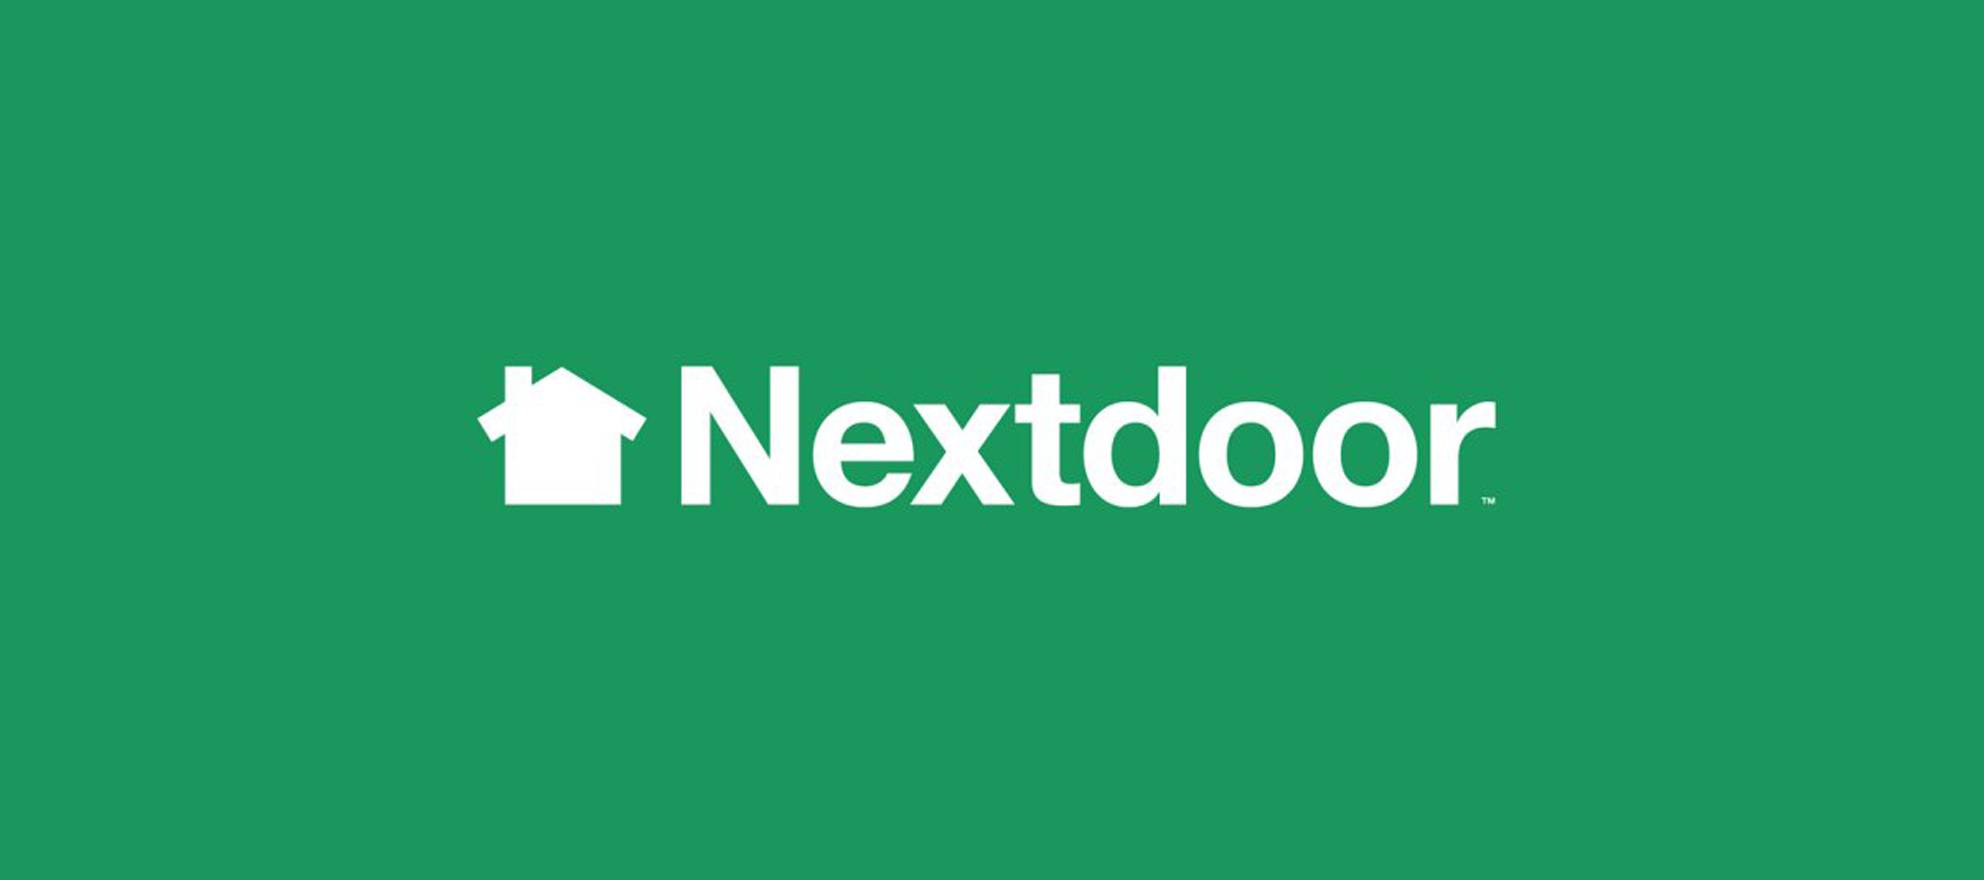 Next door. Nextdoor on the inside. Nextdoor.com.